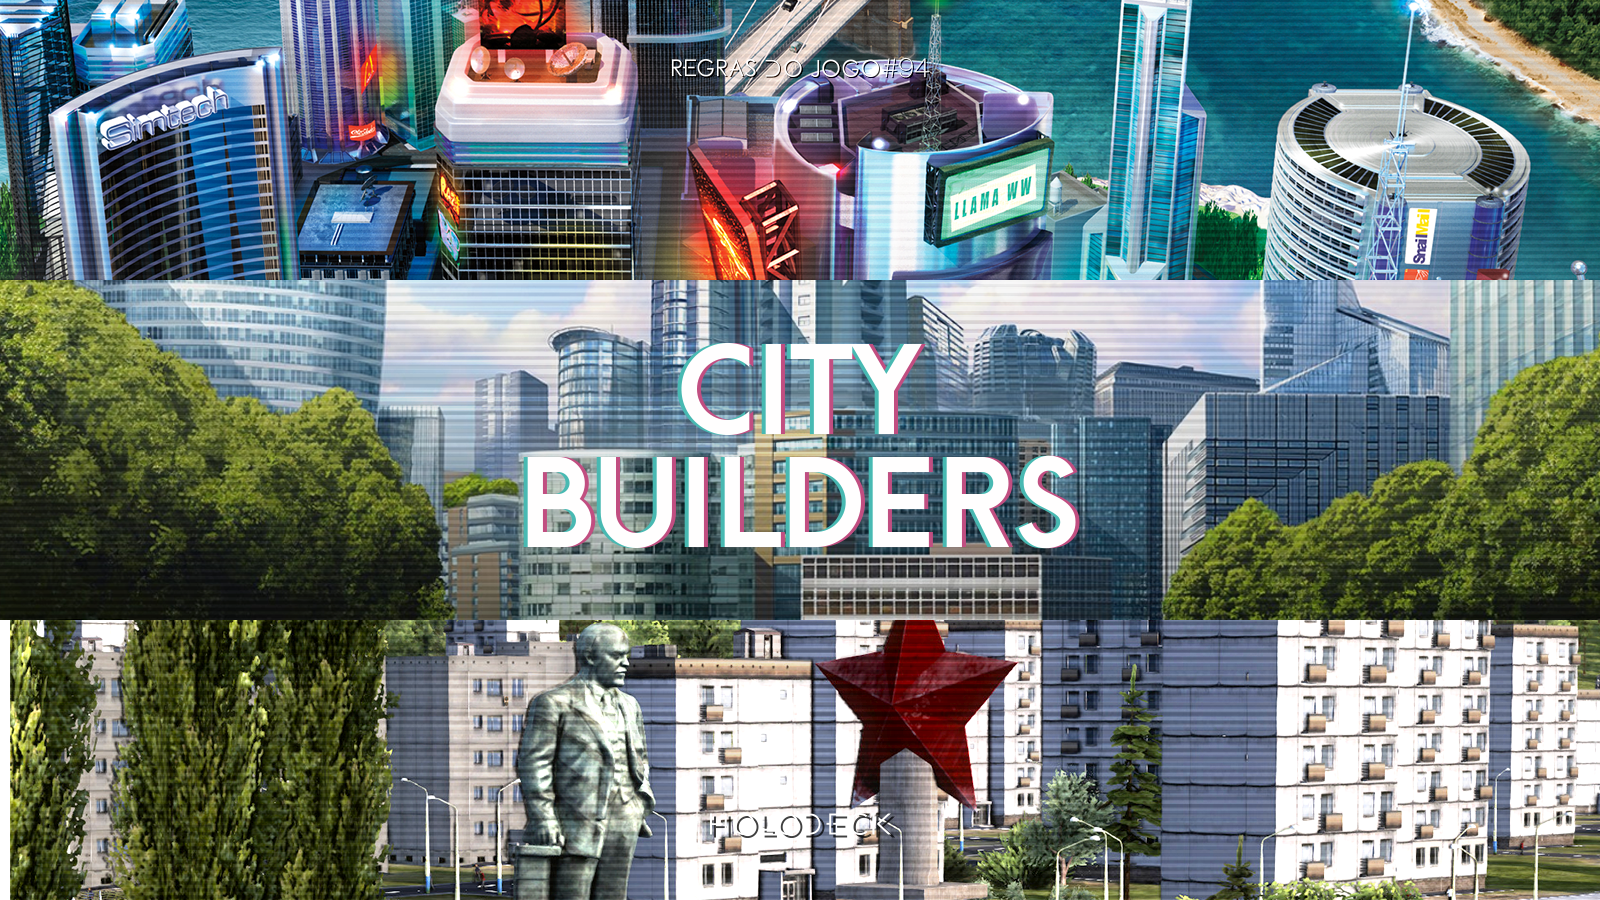 Regras do Jogo #94 – City Builders - Holodeck